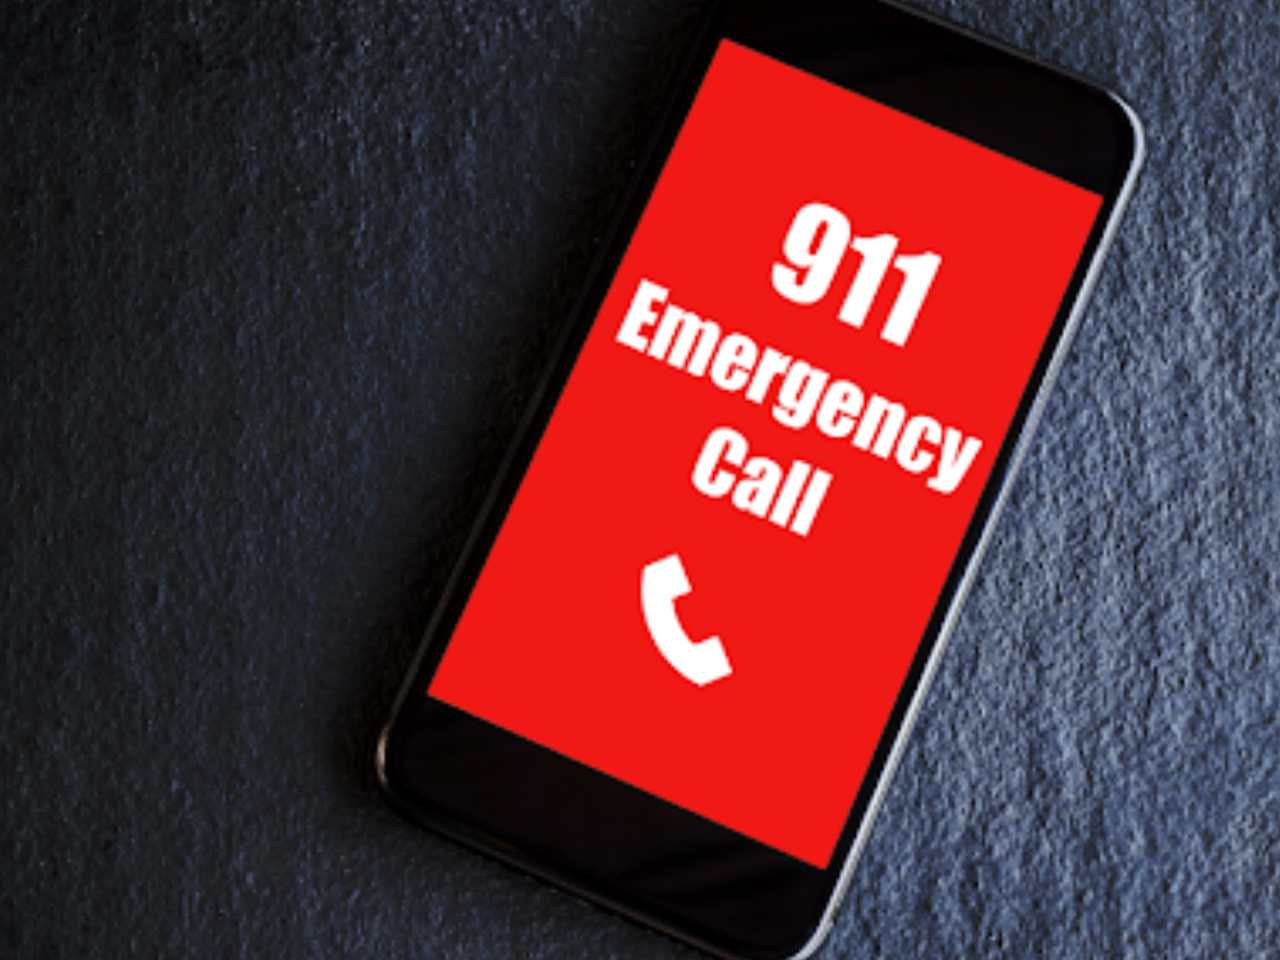 911 Emergency Call Phone